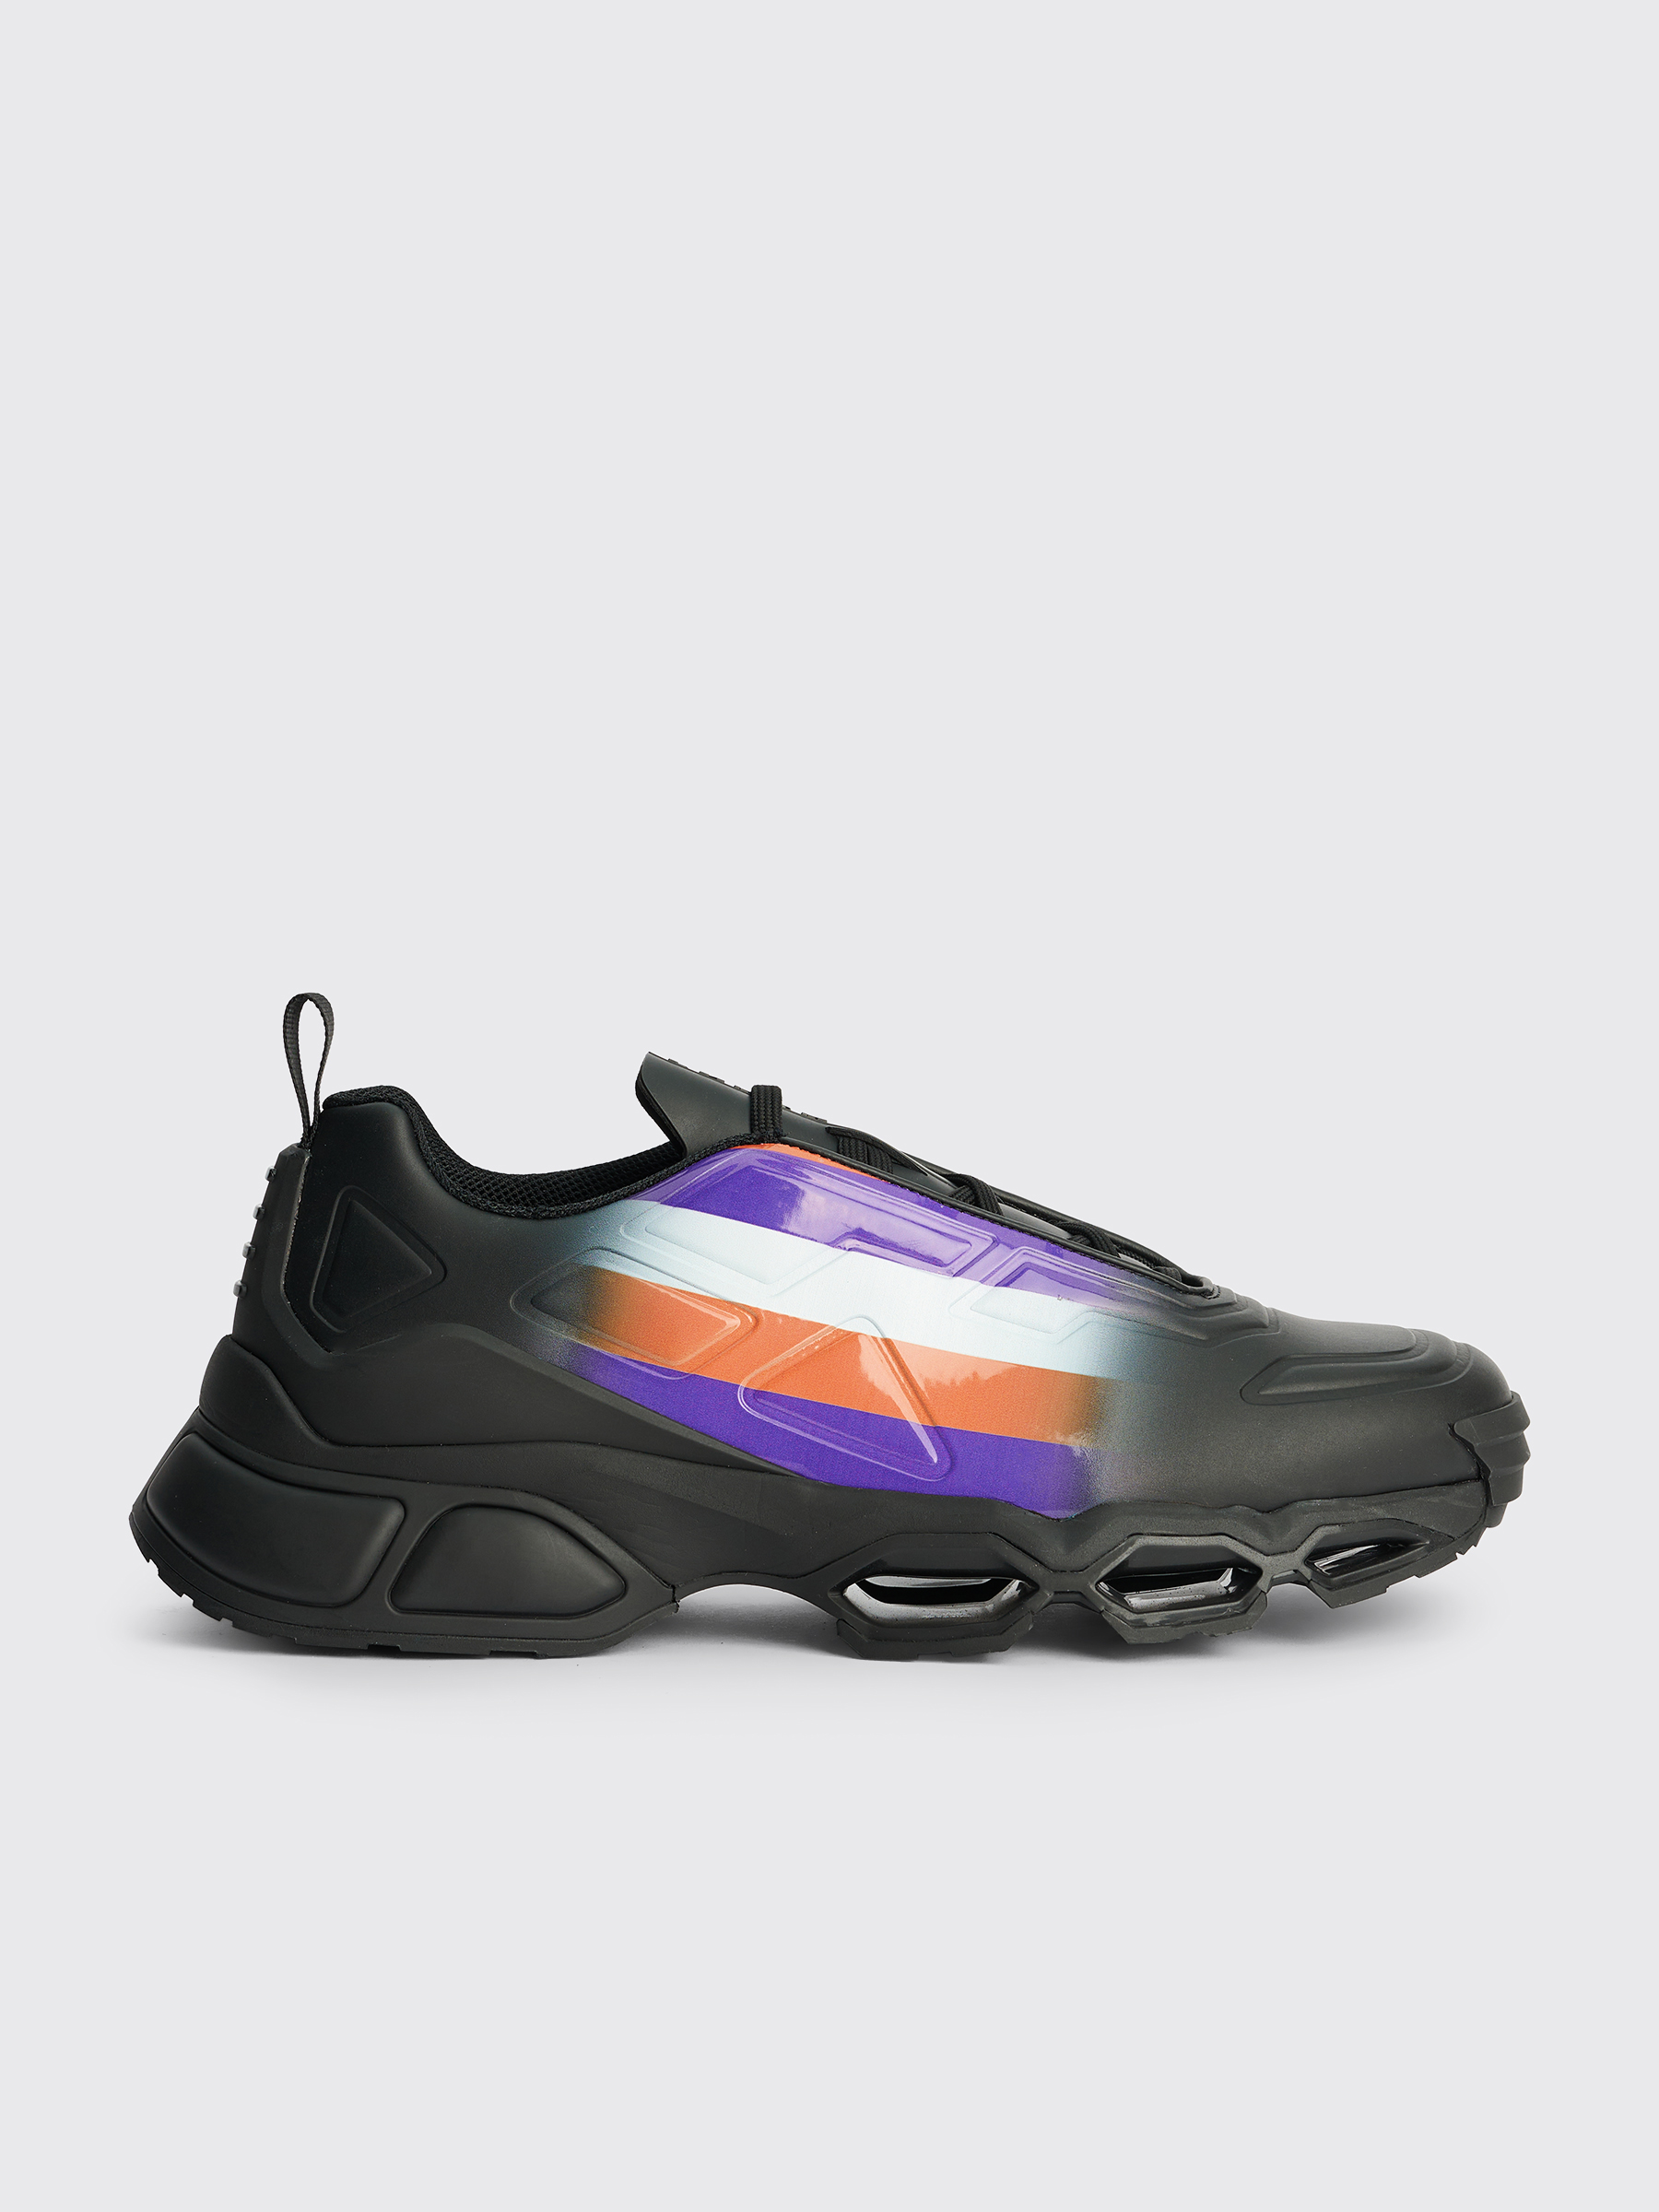 Très Bien - Prada Collision Cross Sneakers Black / Violet